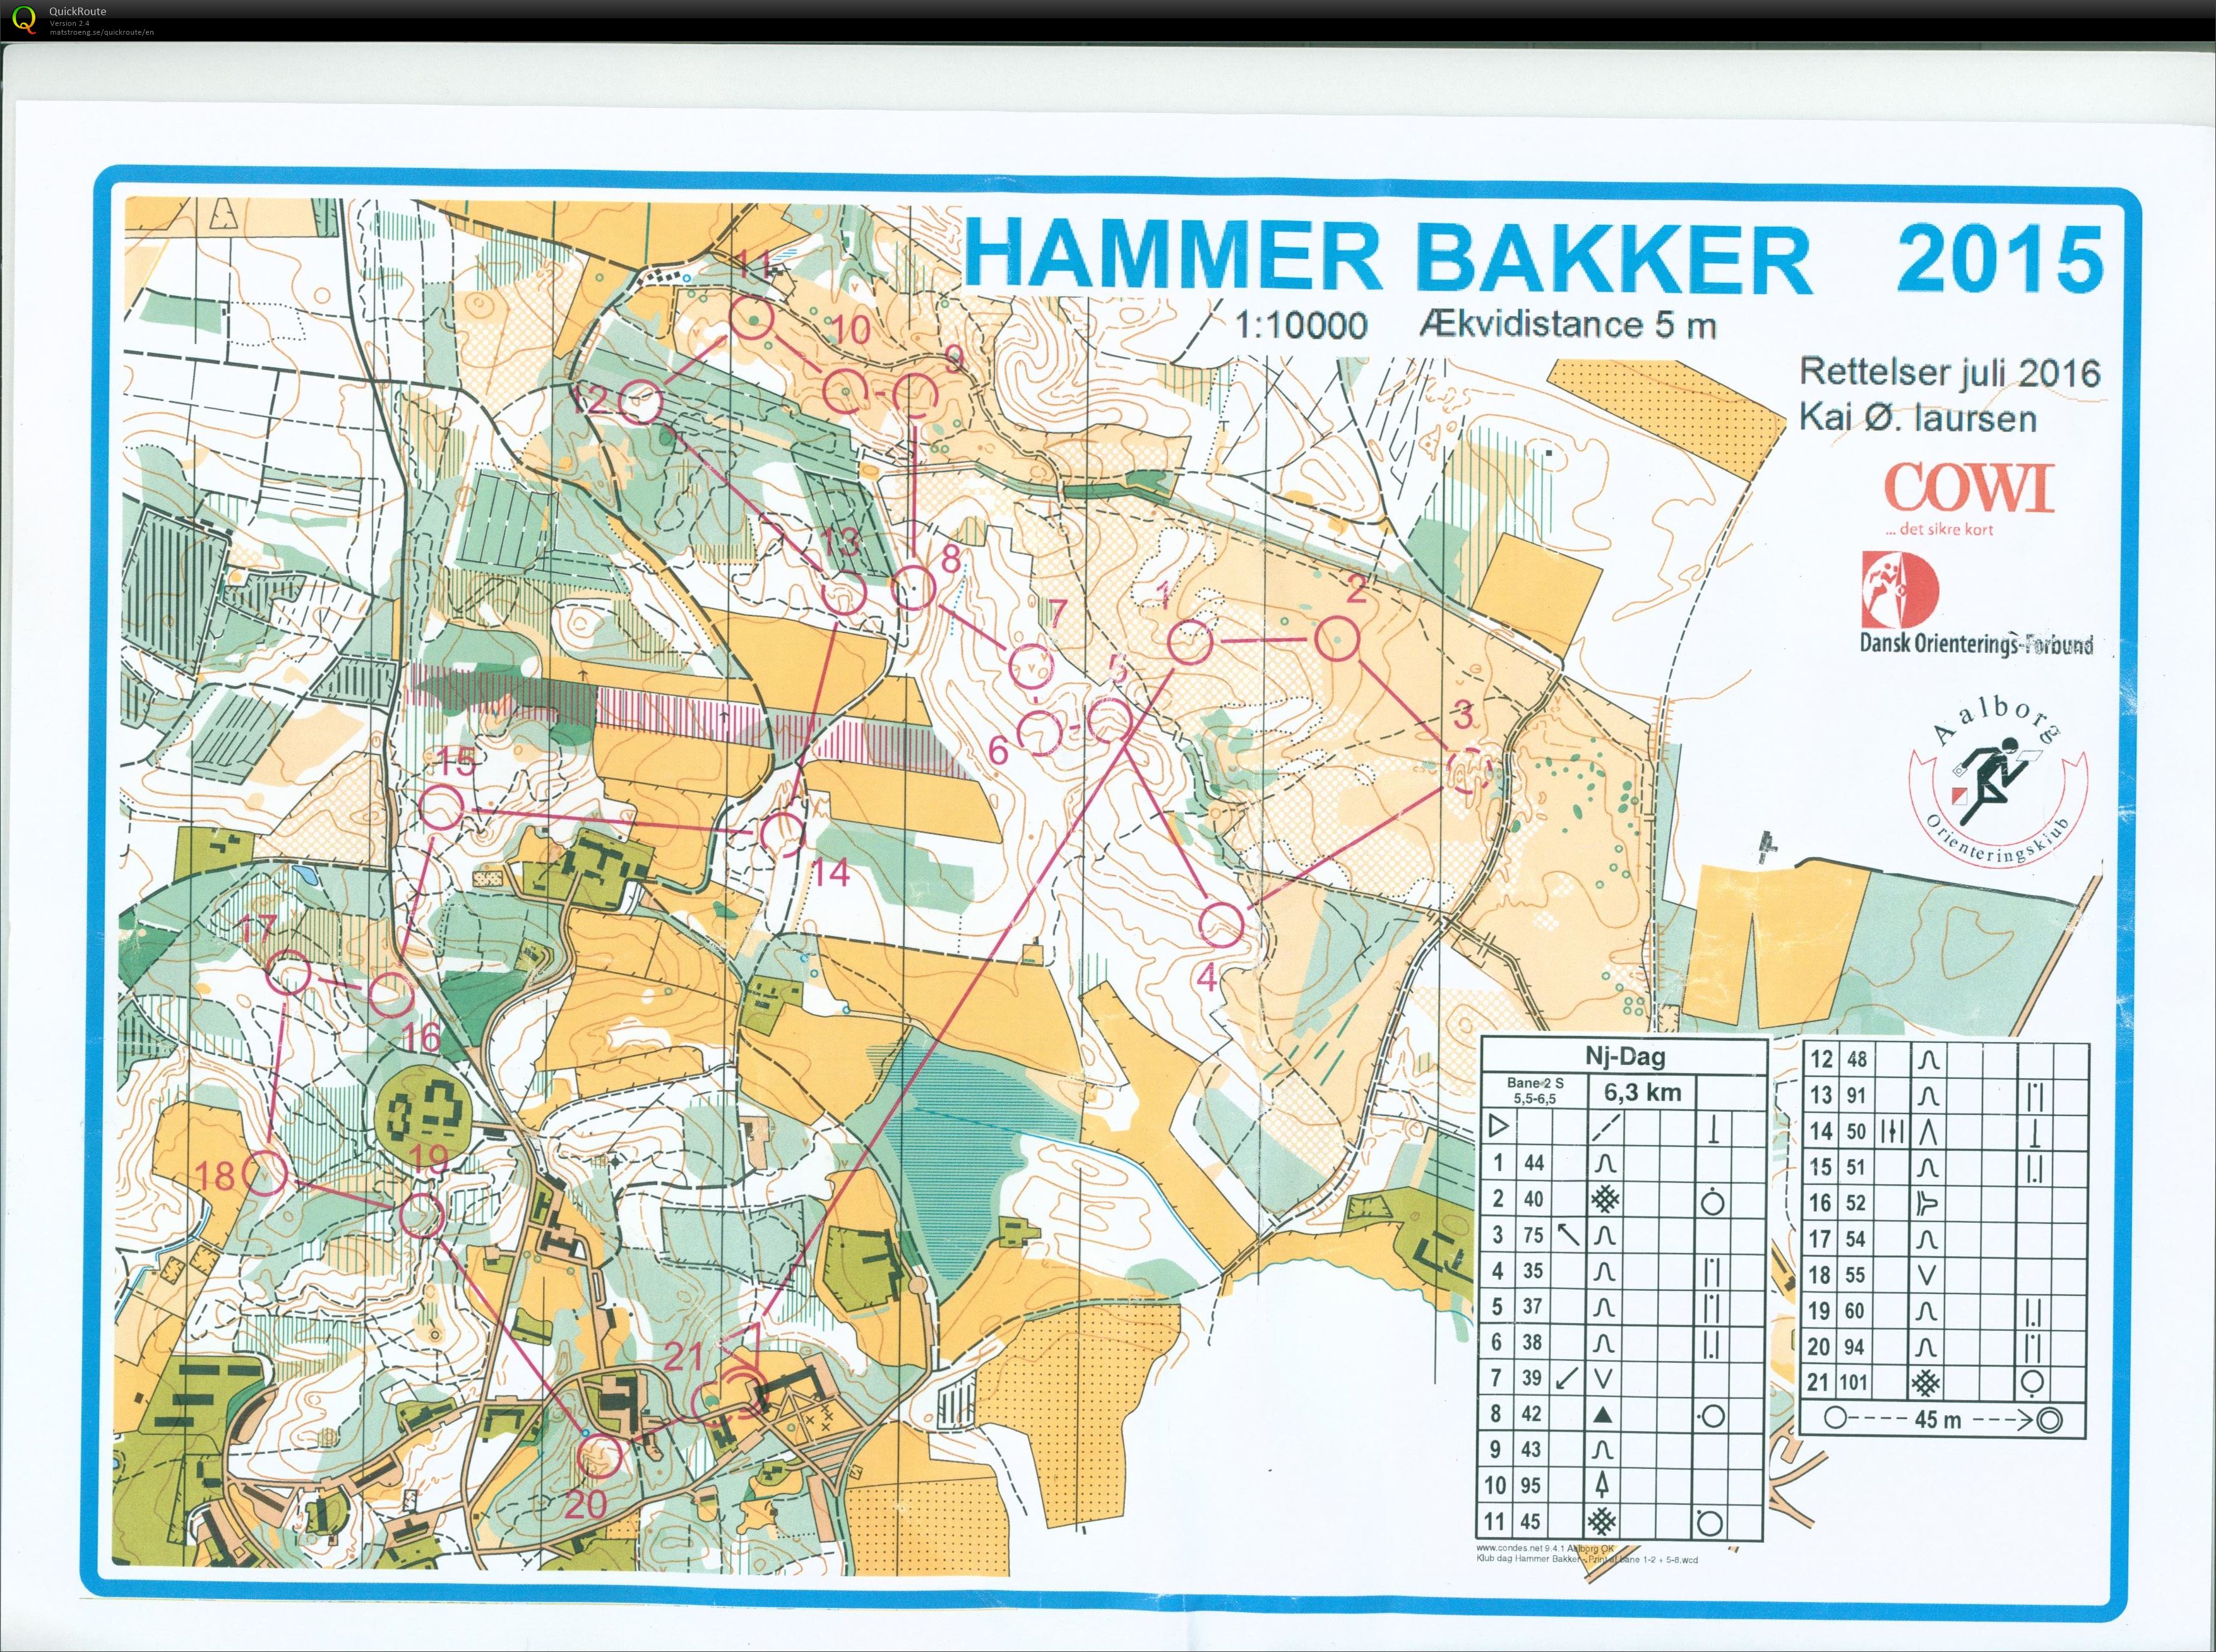 Hammer Bakker bane 2 Keld Gade (13.11.2016)